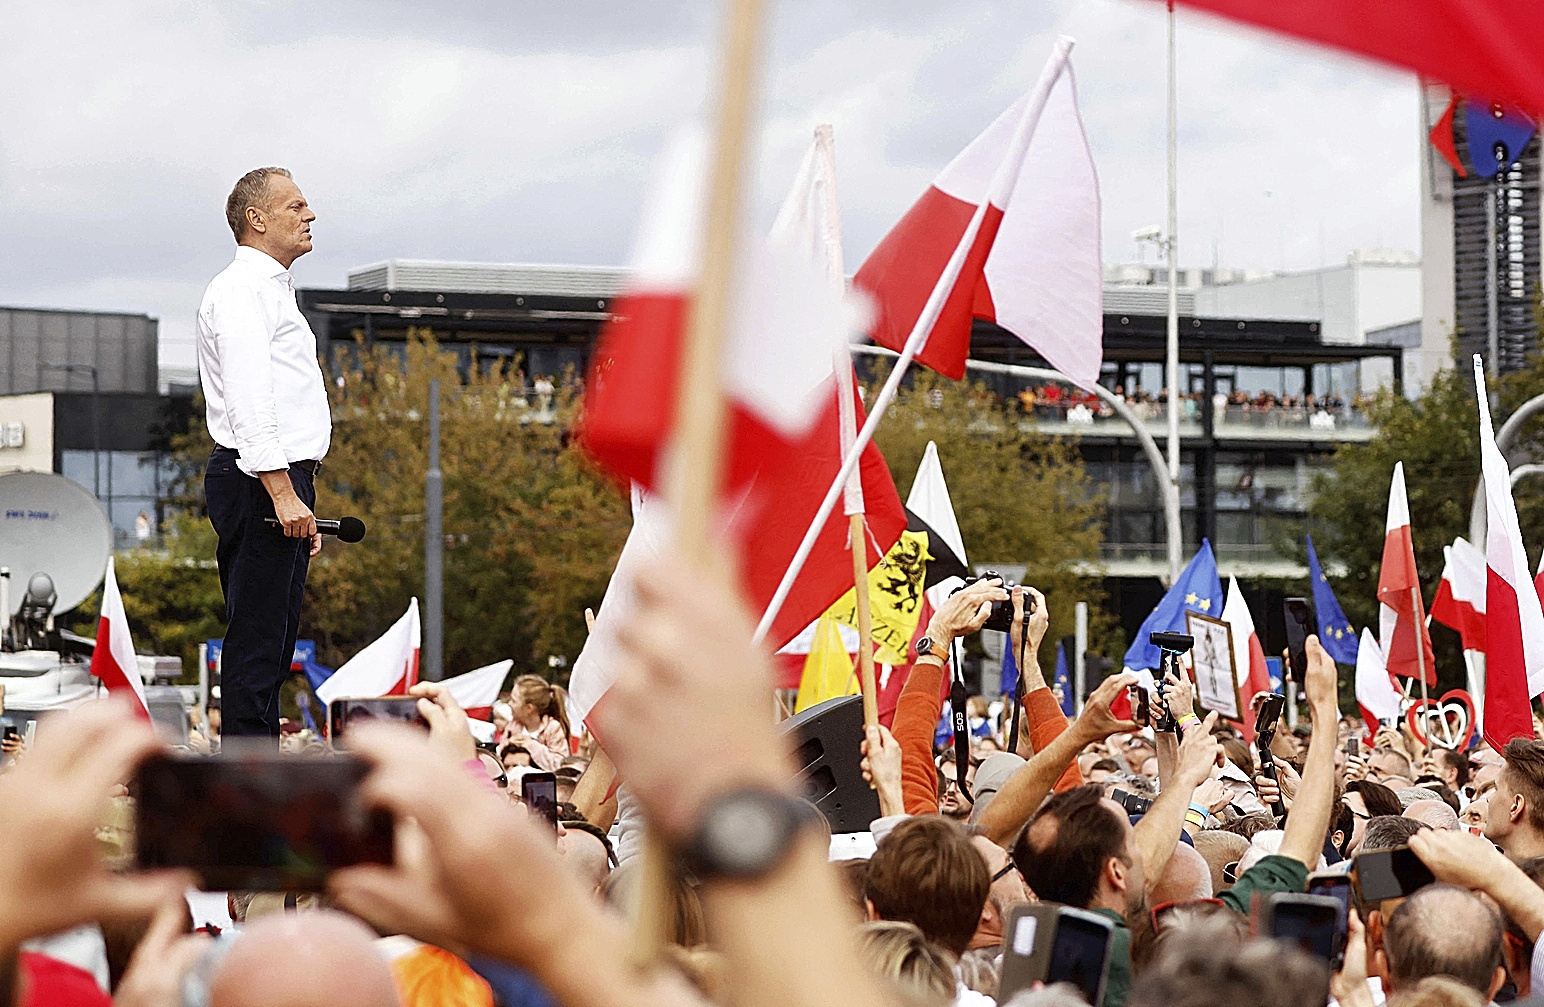 Polonia se debate entre alejarse más de Europa o volver a acercarse a la UE